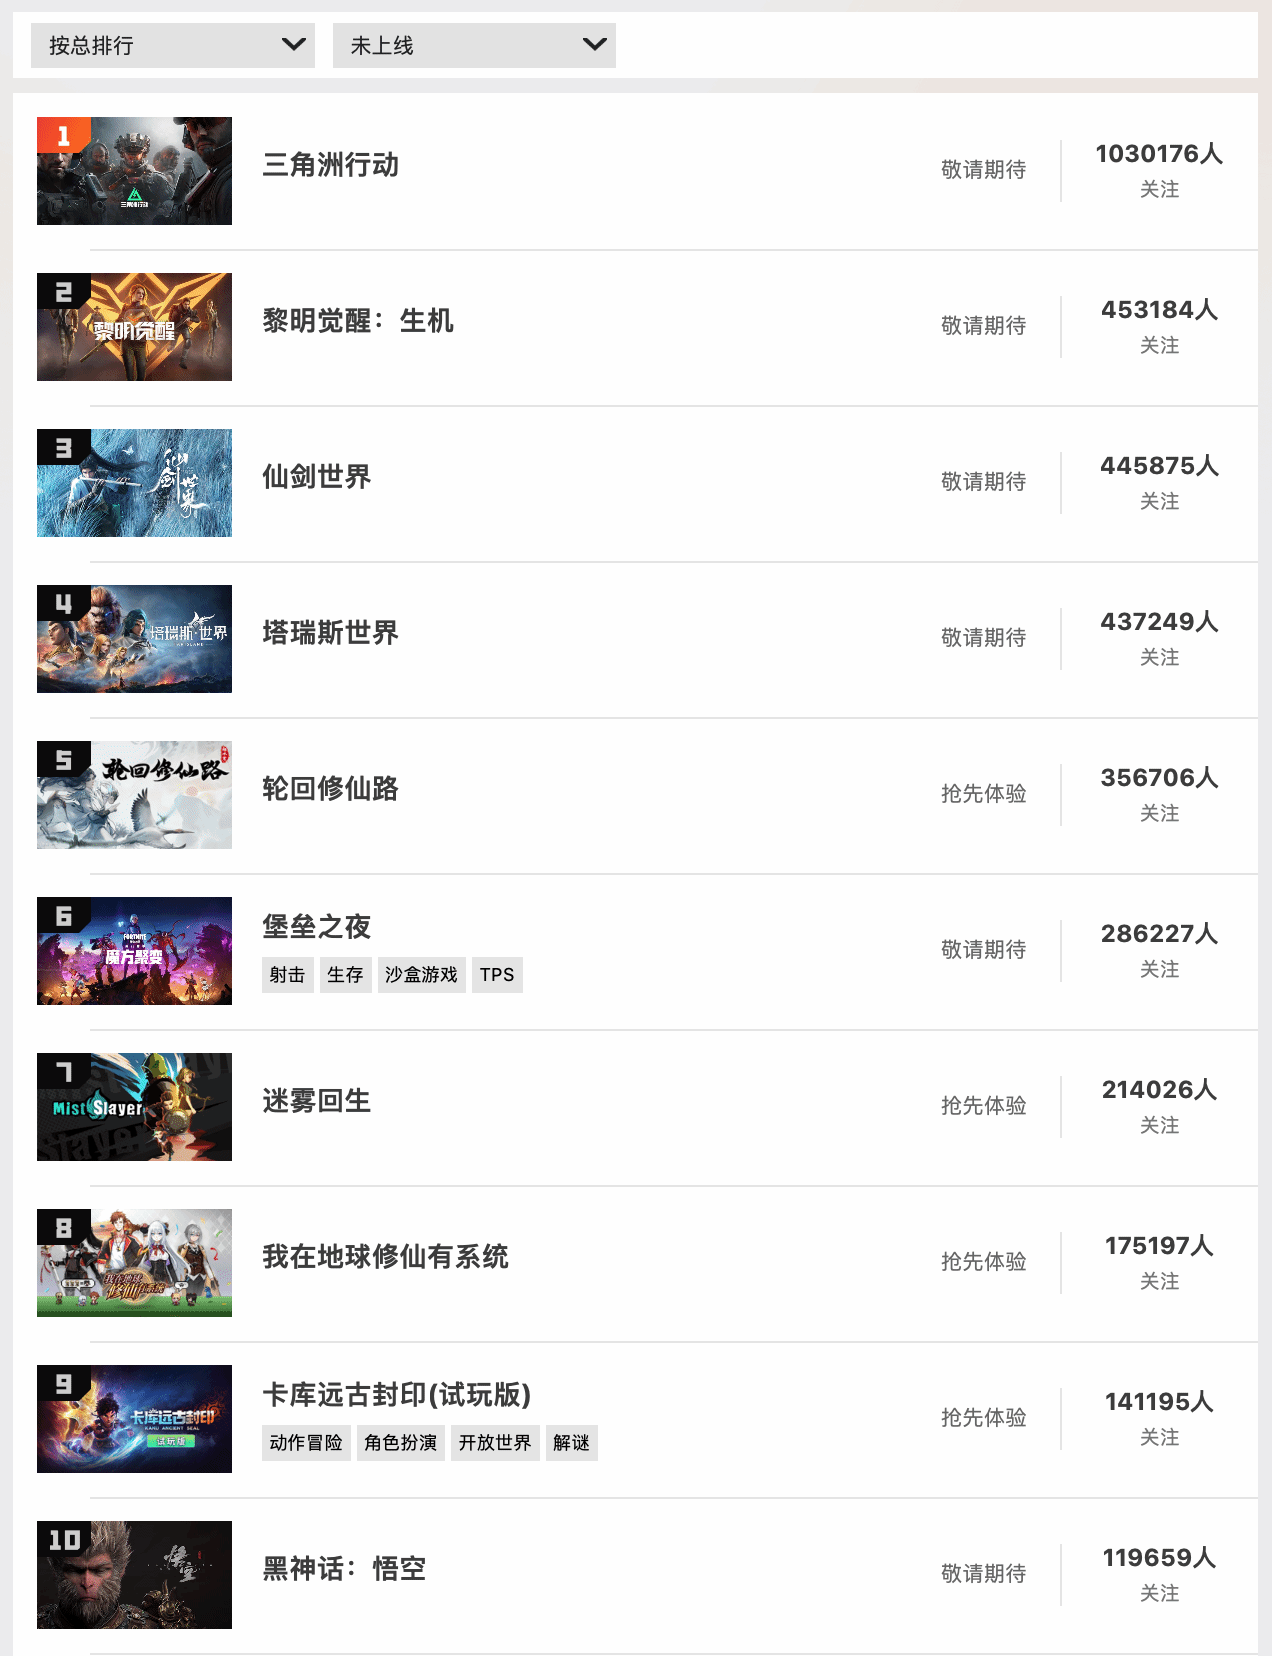 《黑神話悟空》已成為WeGame周關注排行榜第一名